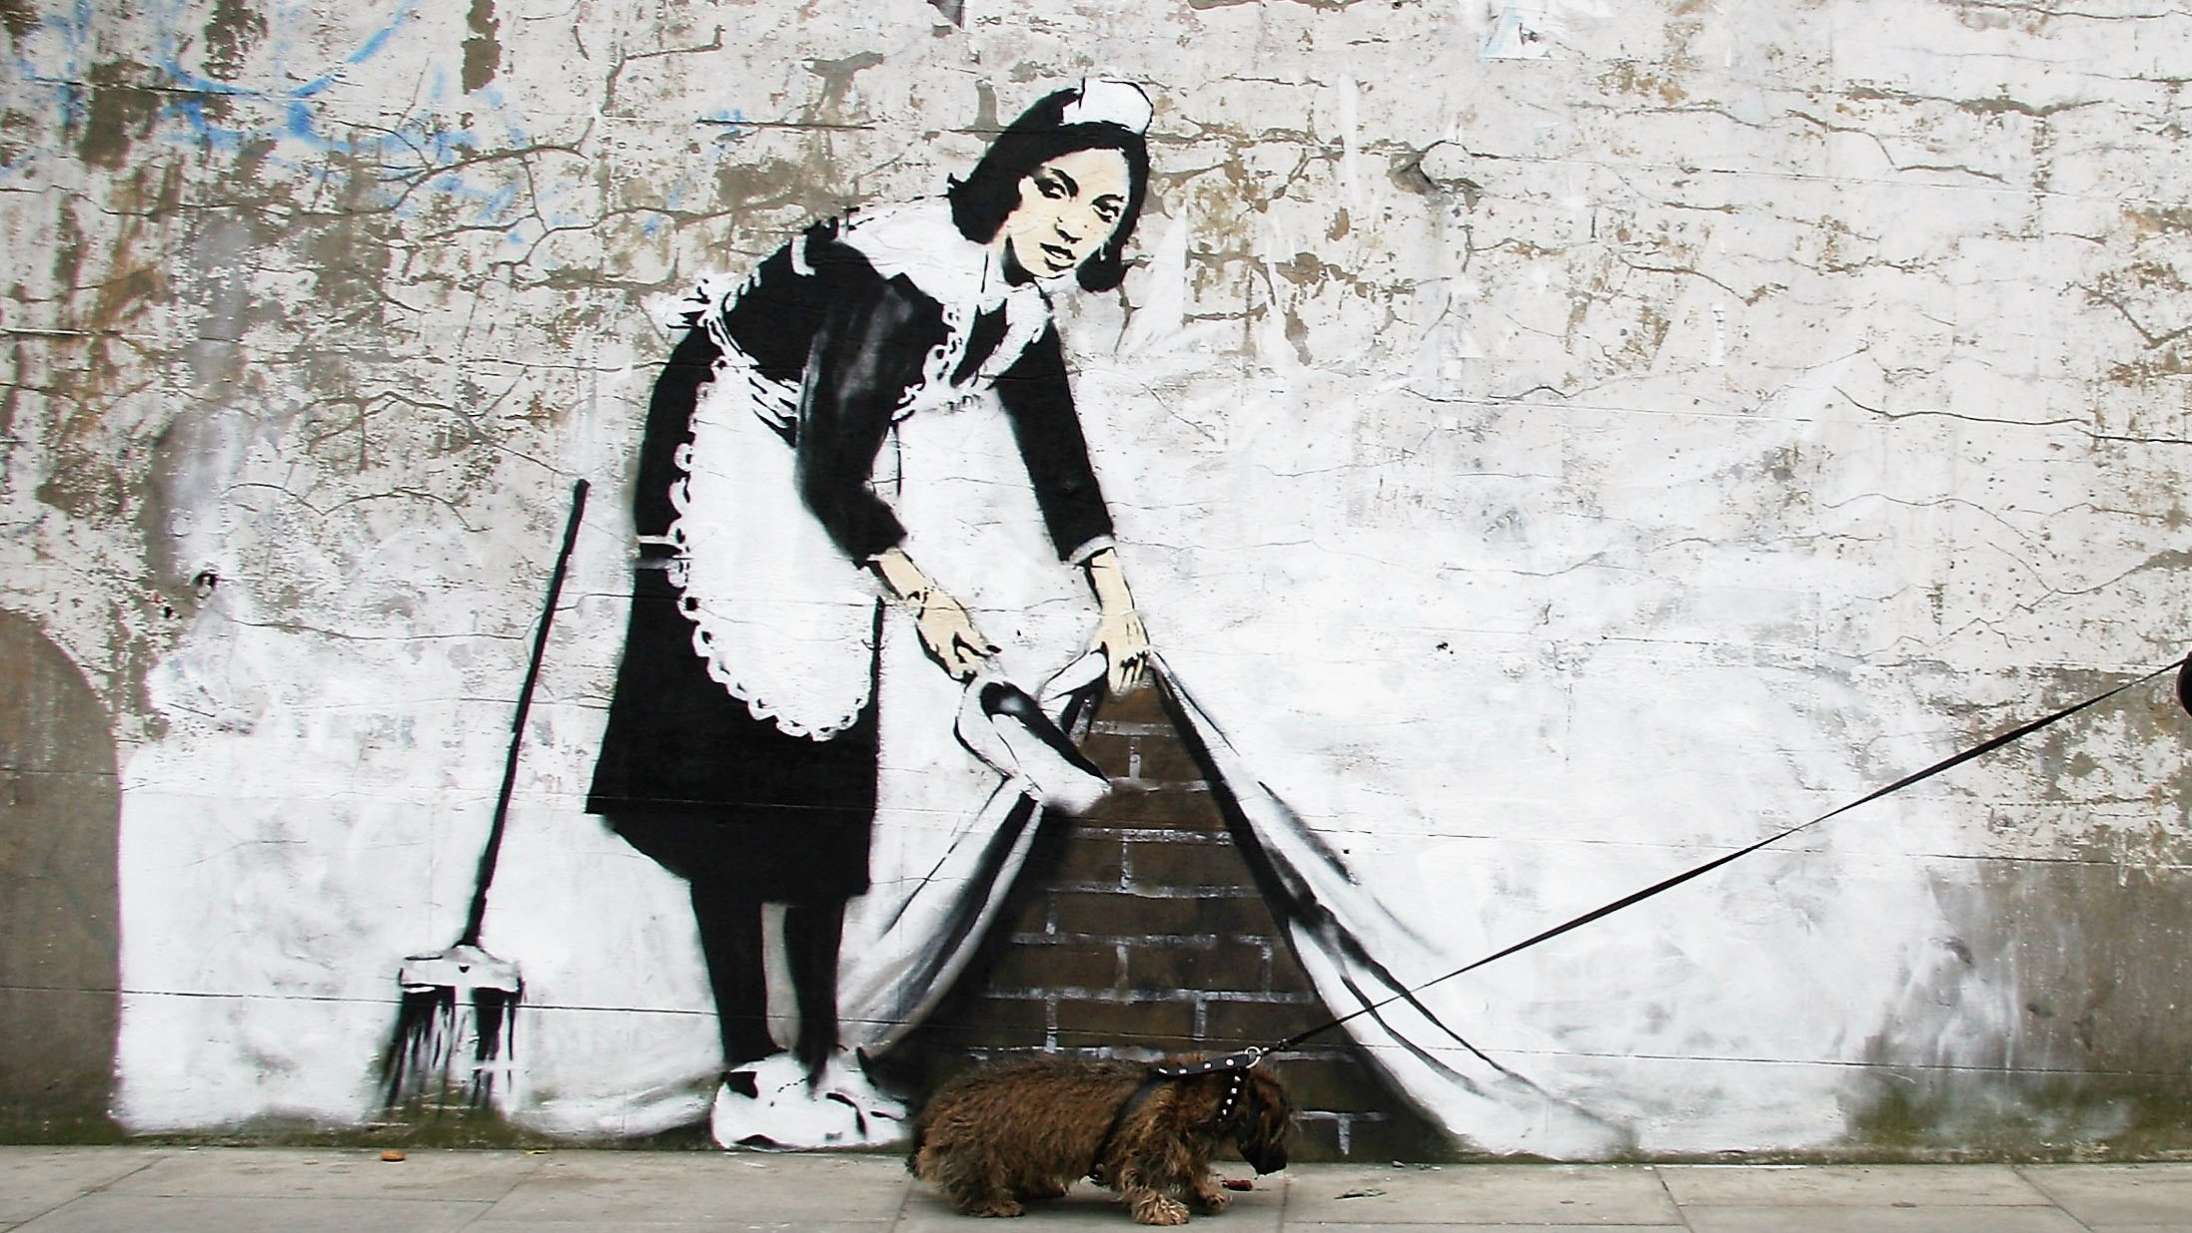 Retssag kan tvinge Banksy til at afsløre sin identitet